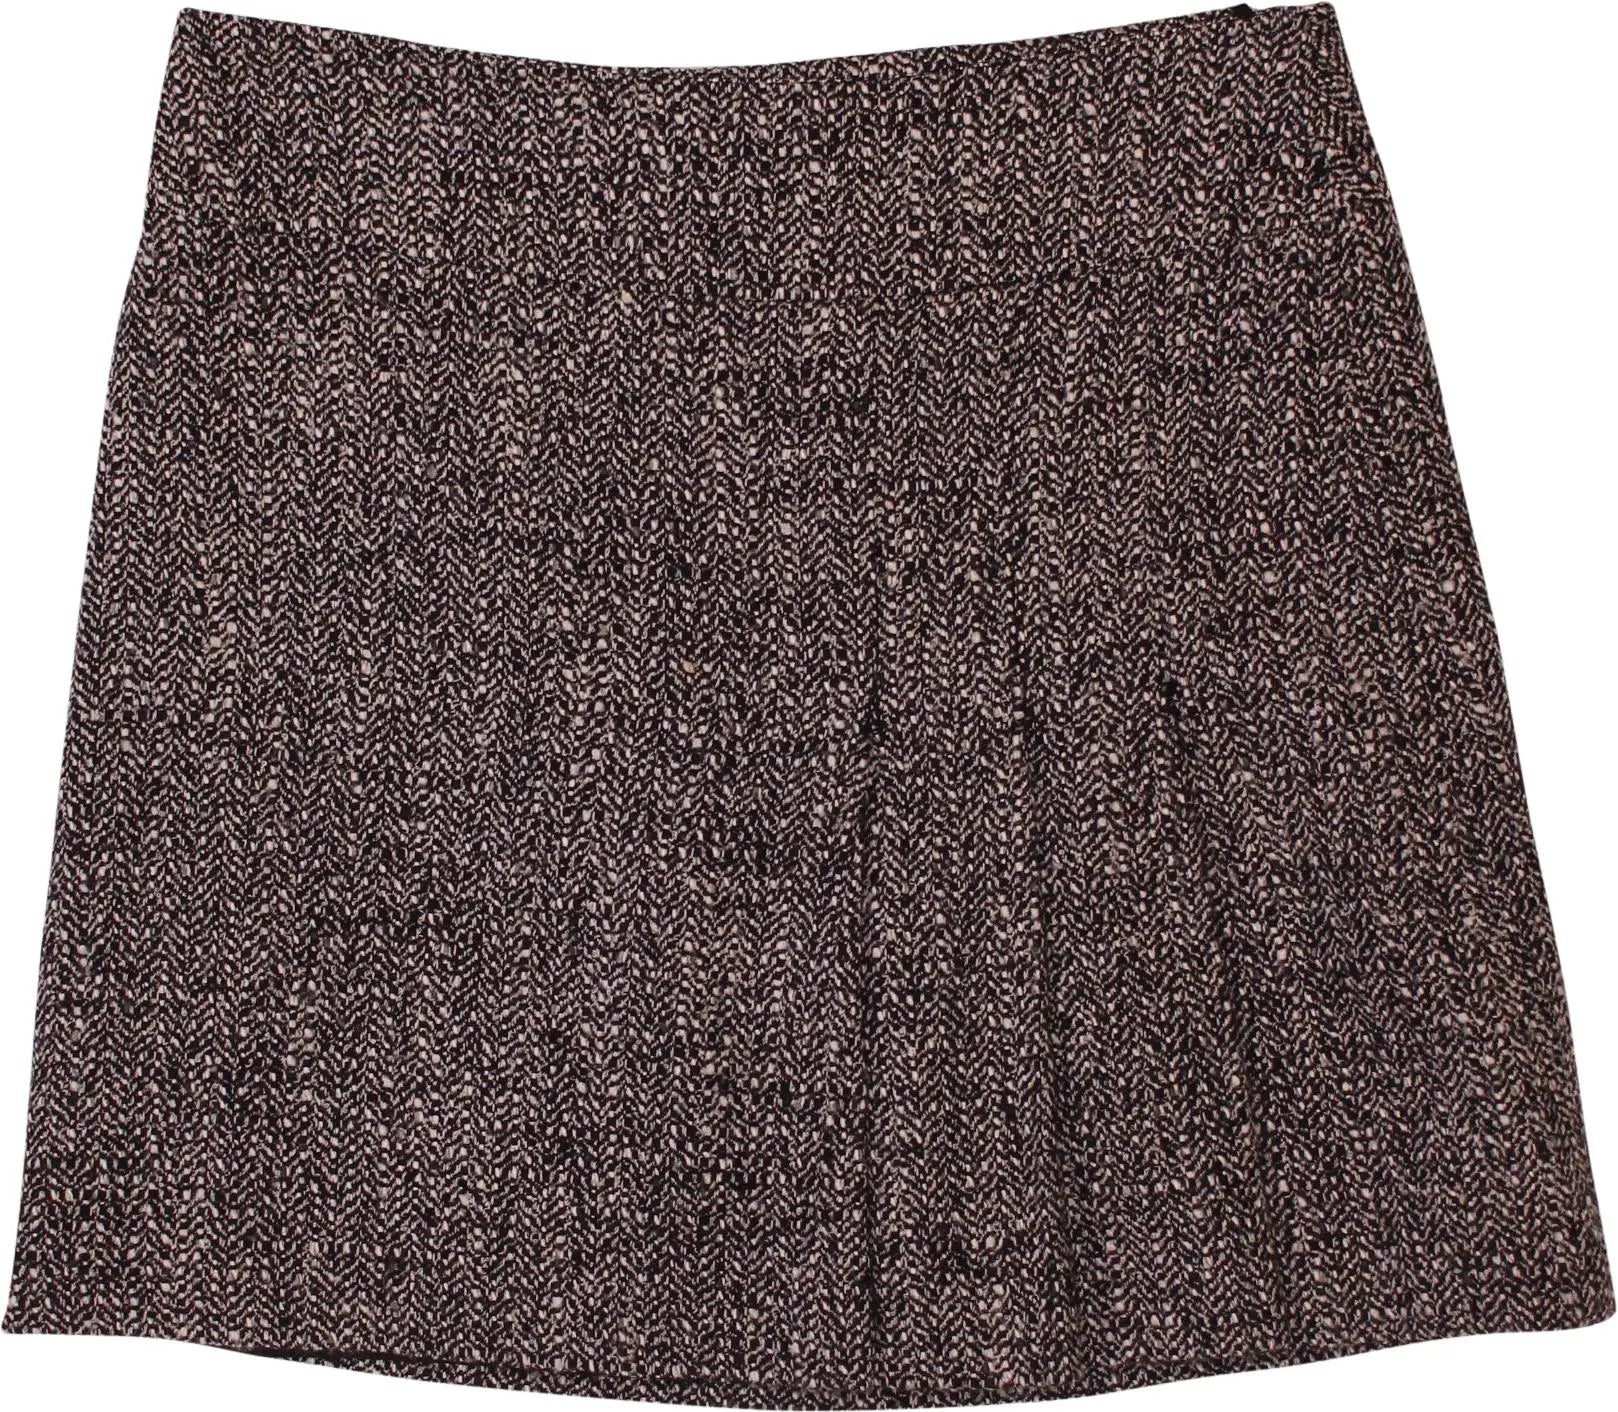 Marc Aurel - Short Tweed Skirt- ThriftTale.com - Vintage and second handclothing